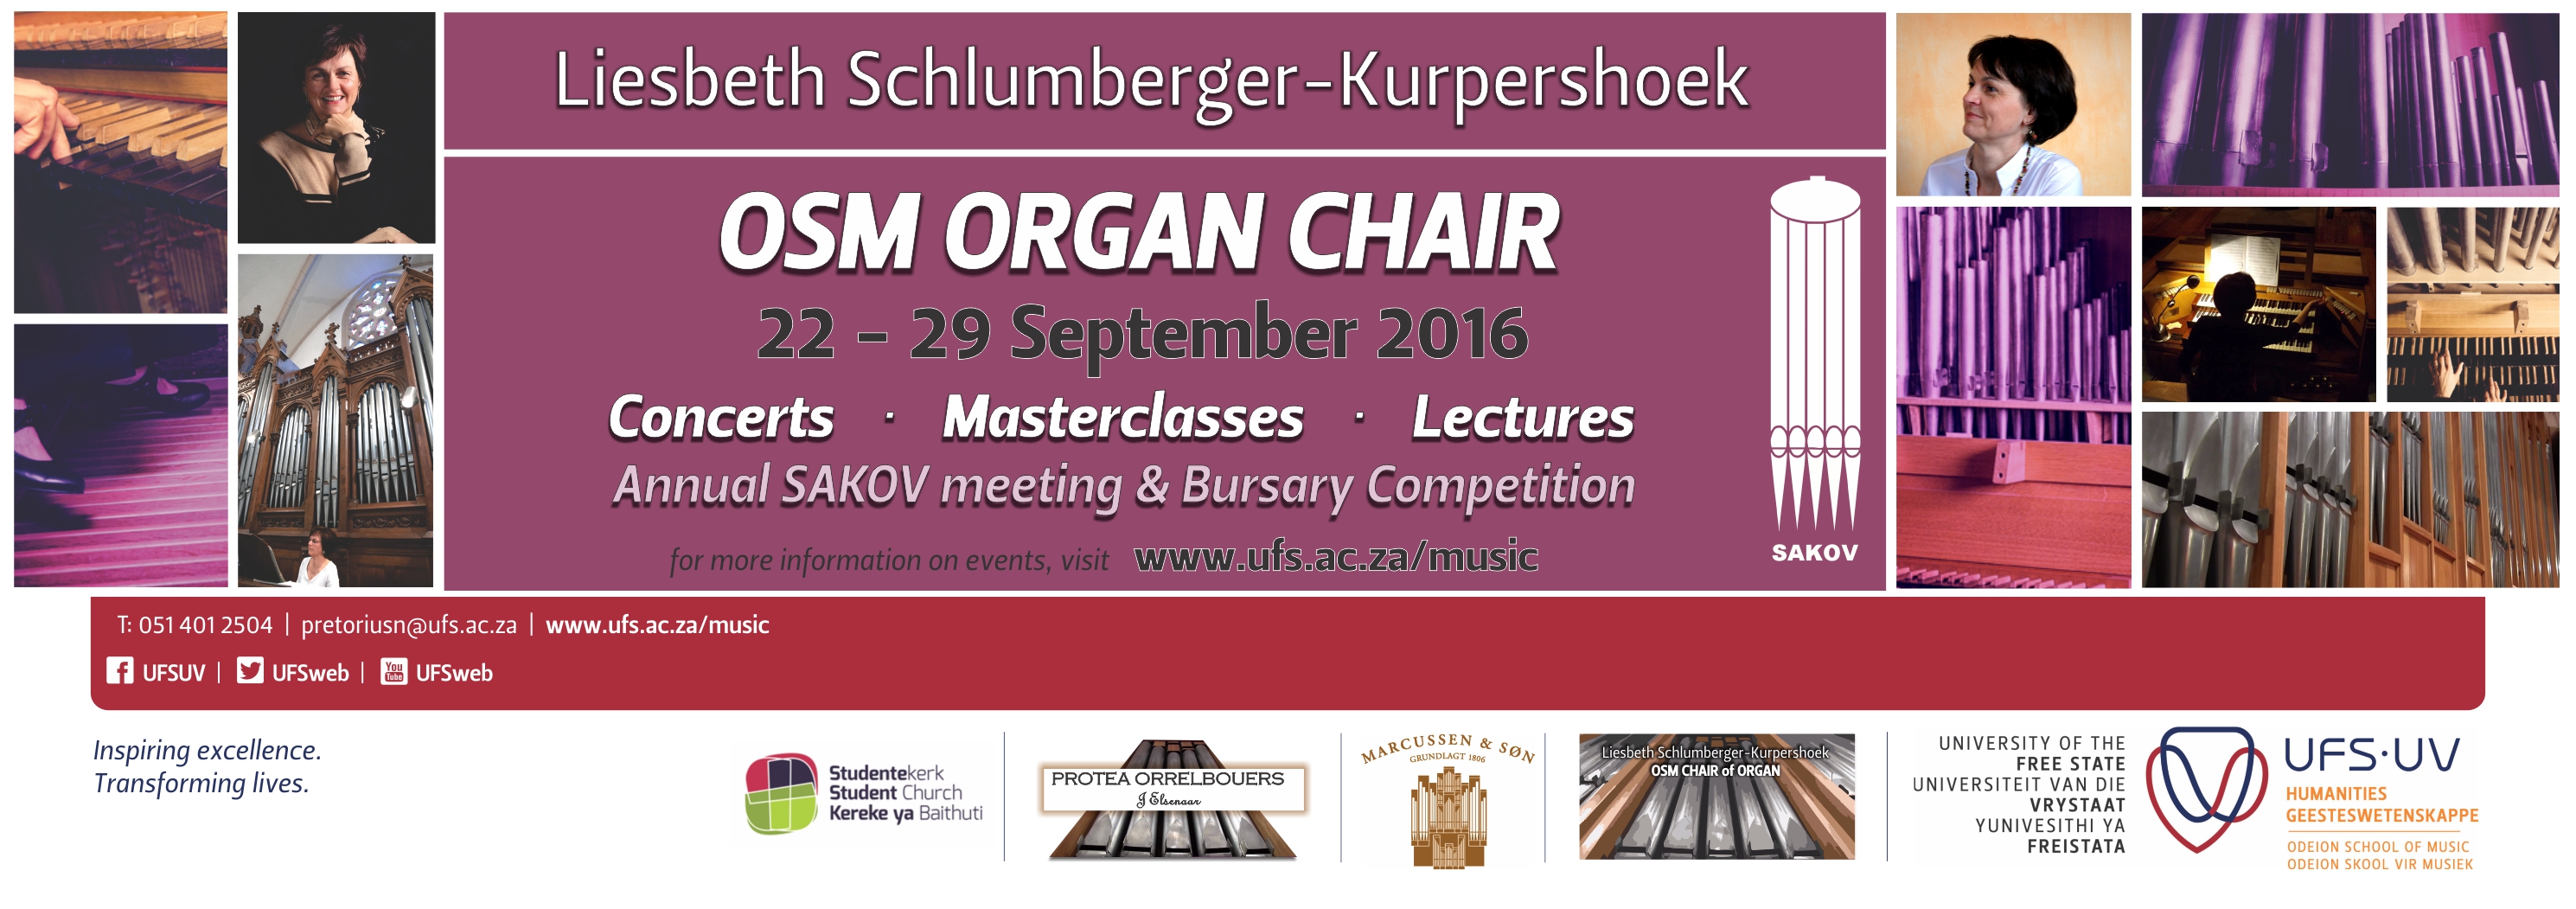 Liesbeth Schlumberger Organ Chair events 2016 finaal